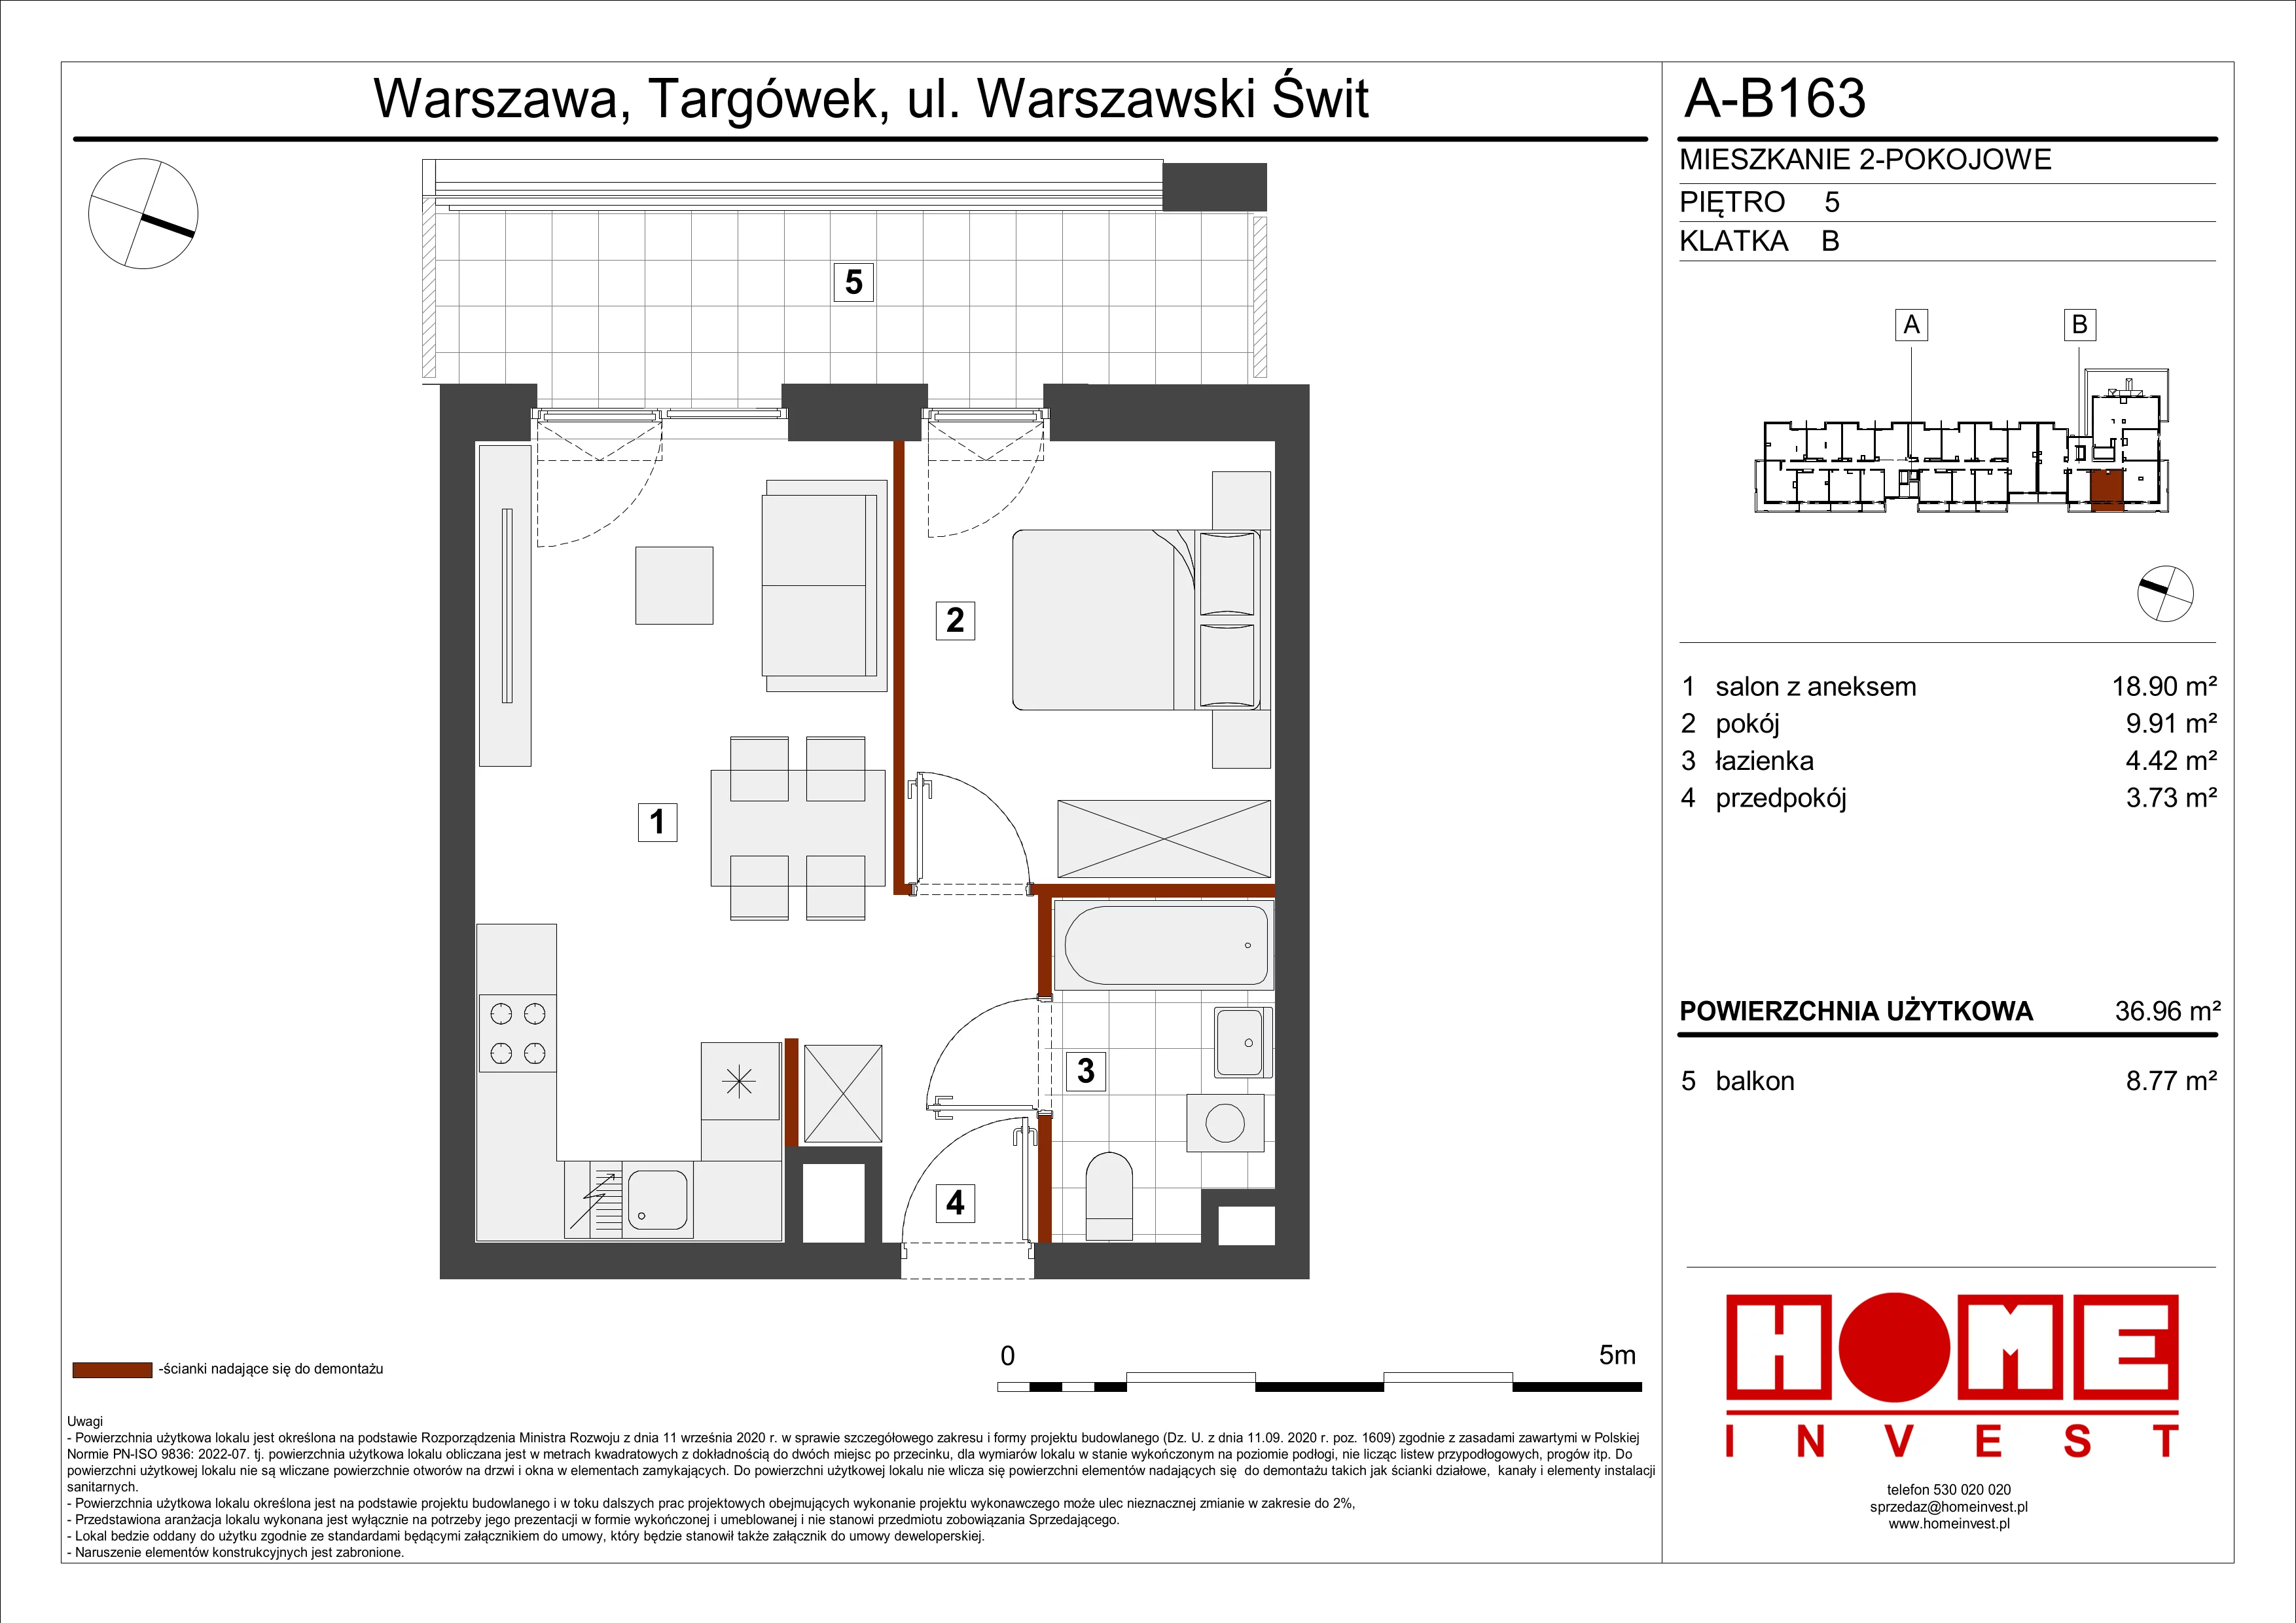 Mieszkanie 36,96 m², piętro 5, oferta nr A-B163, Warszawski Świt, Warszawa, Targówek, Bródno, ul. Warszawski Świt 5